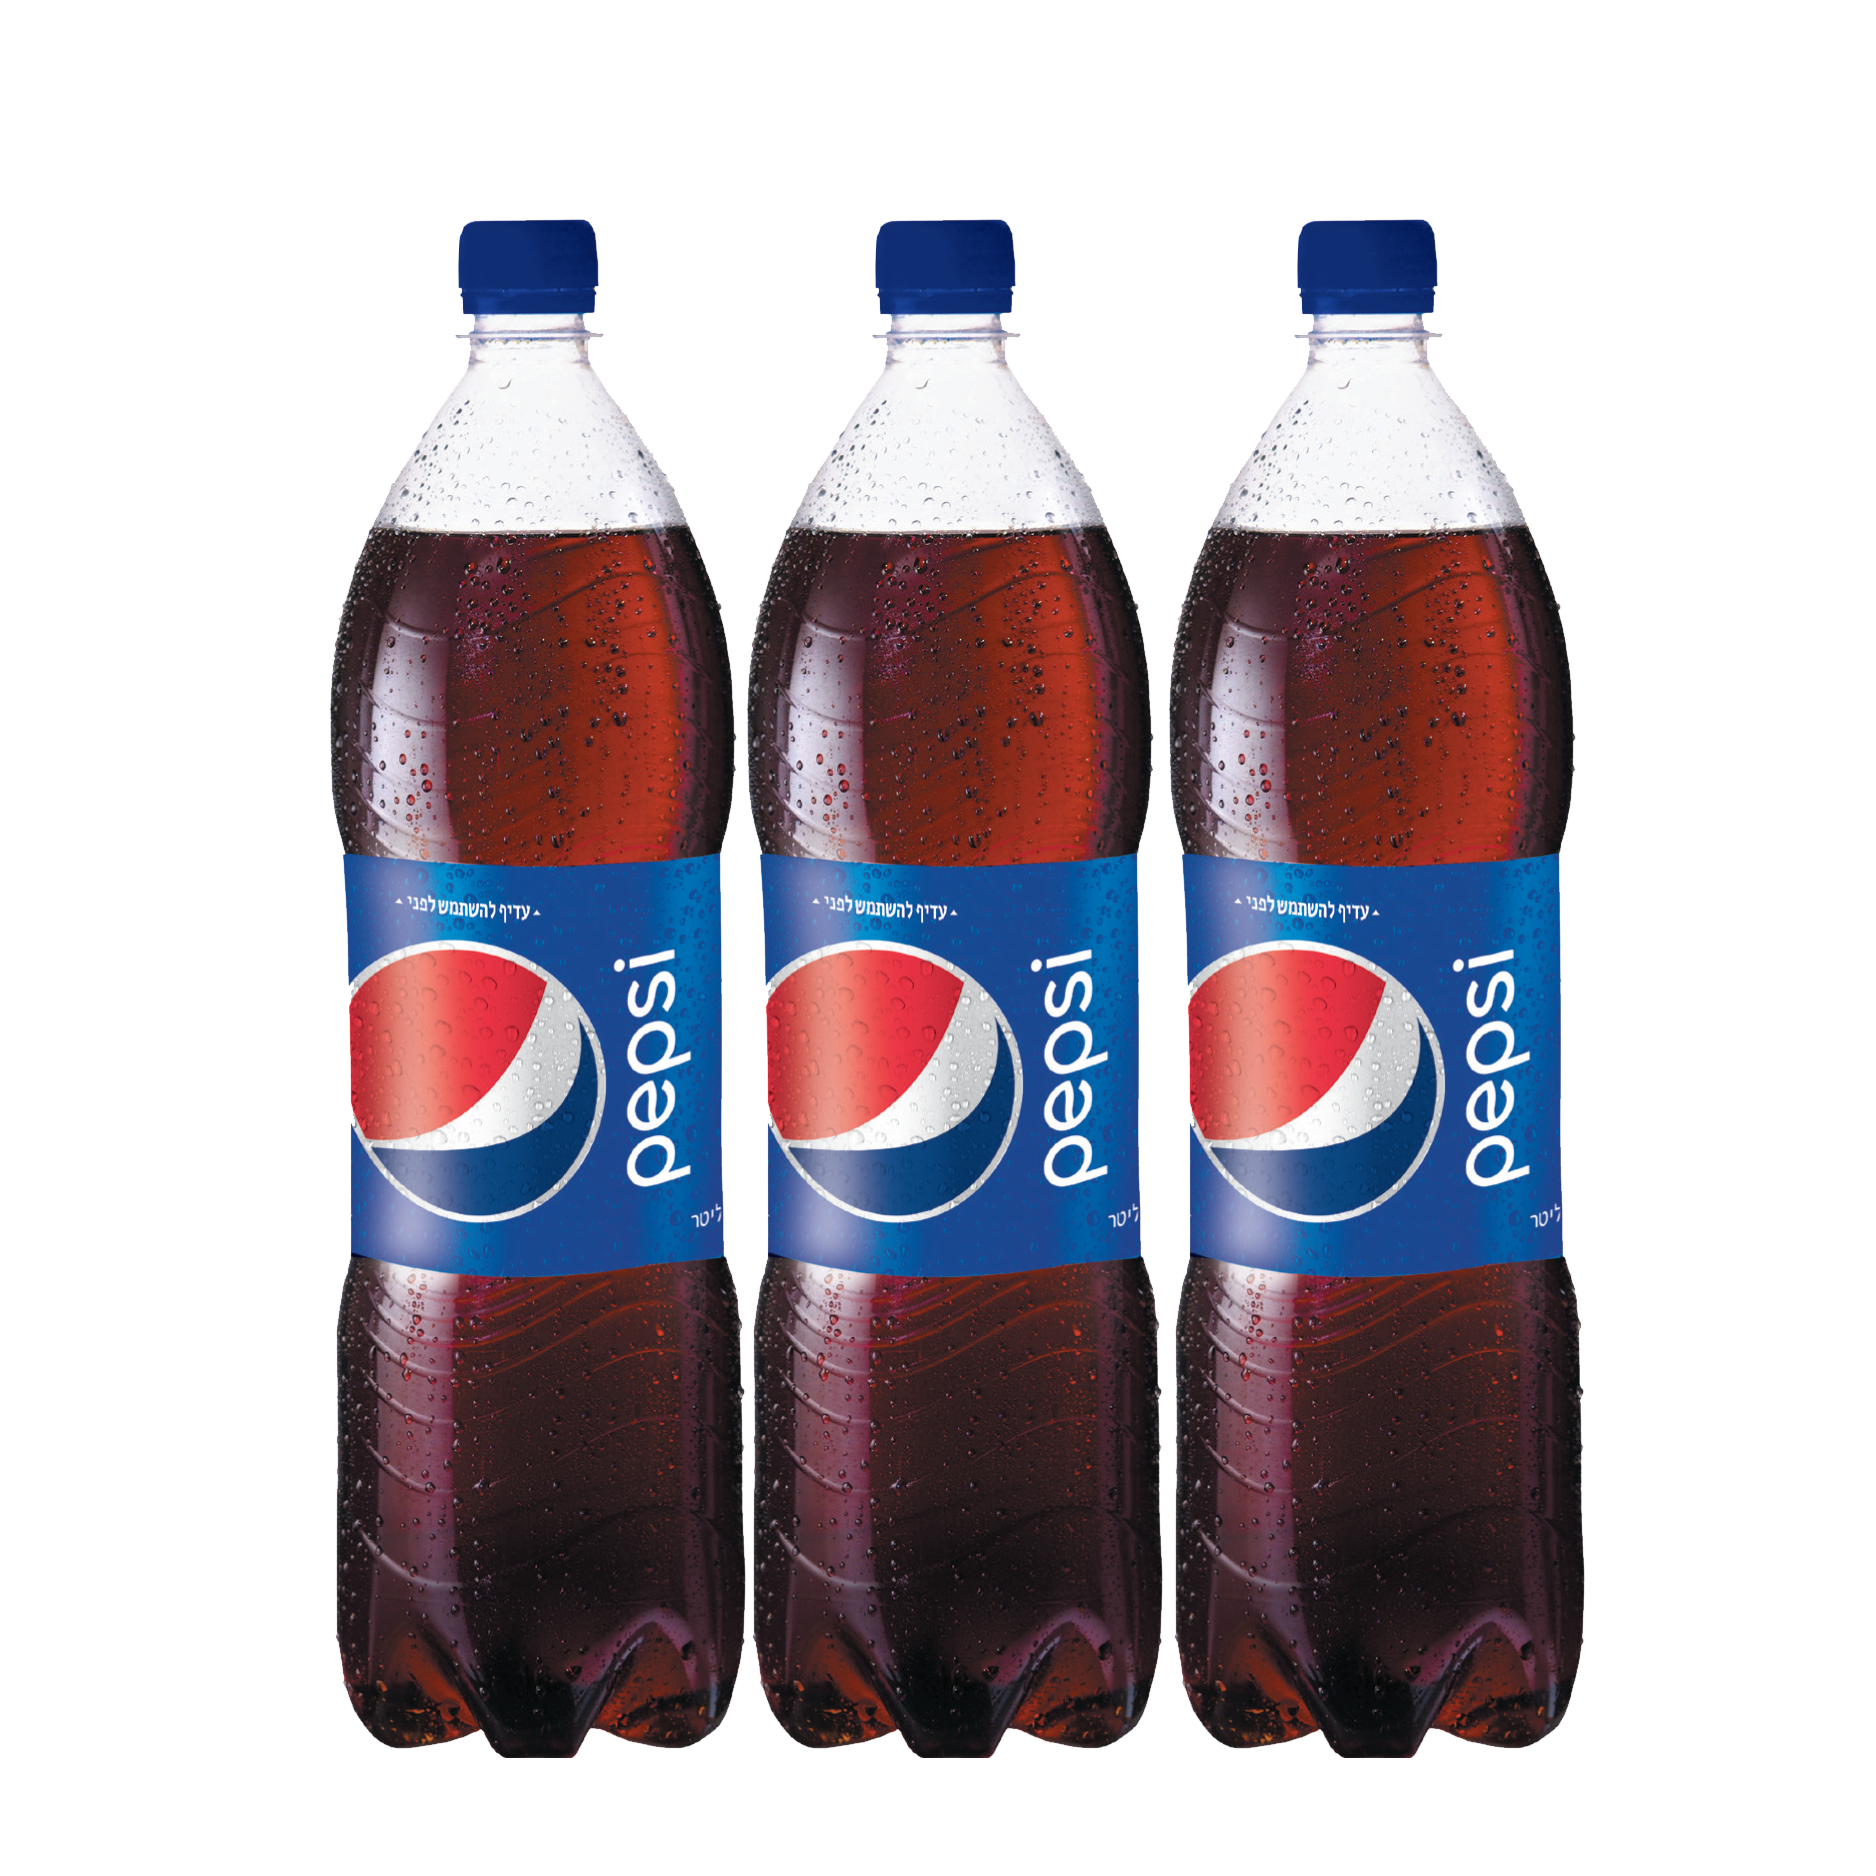 Pepsi PNG HD pngteam.com